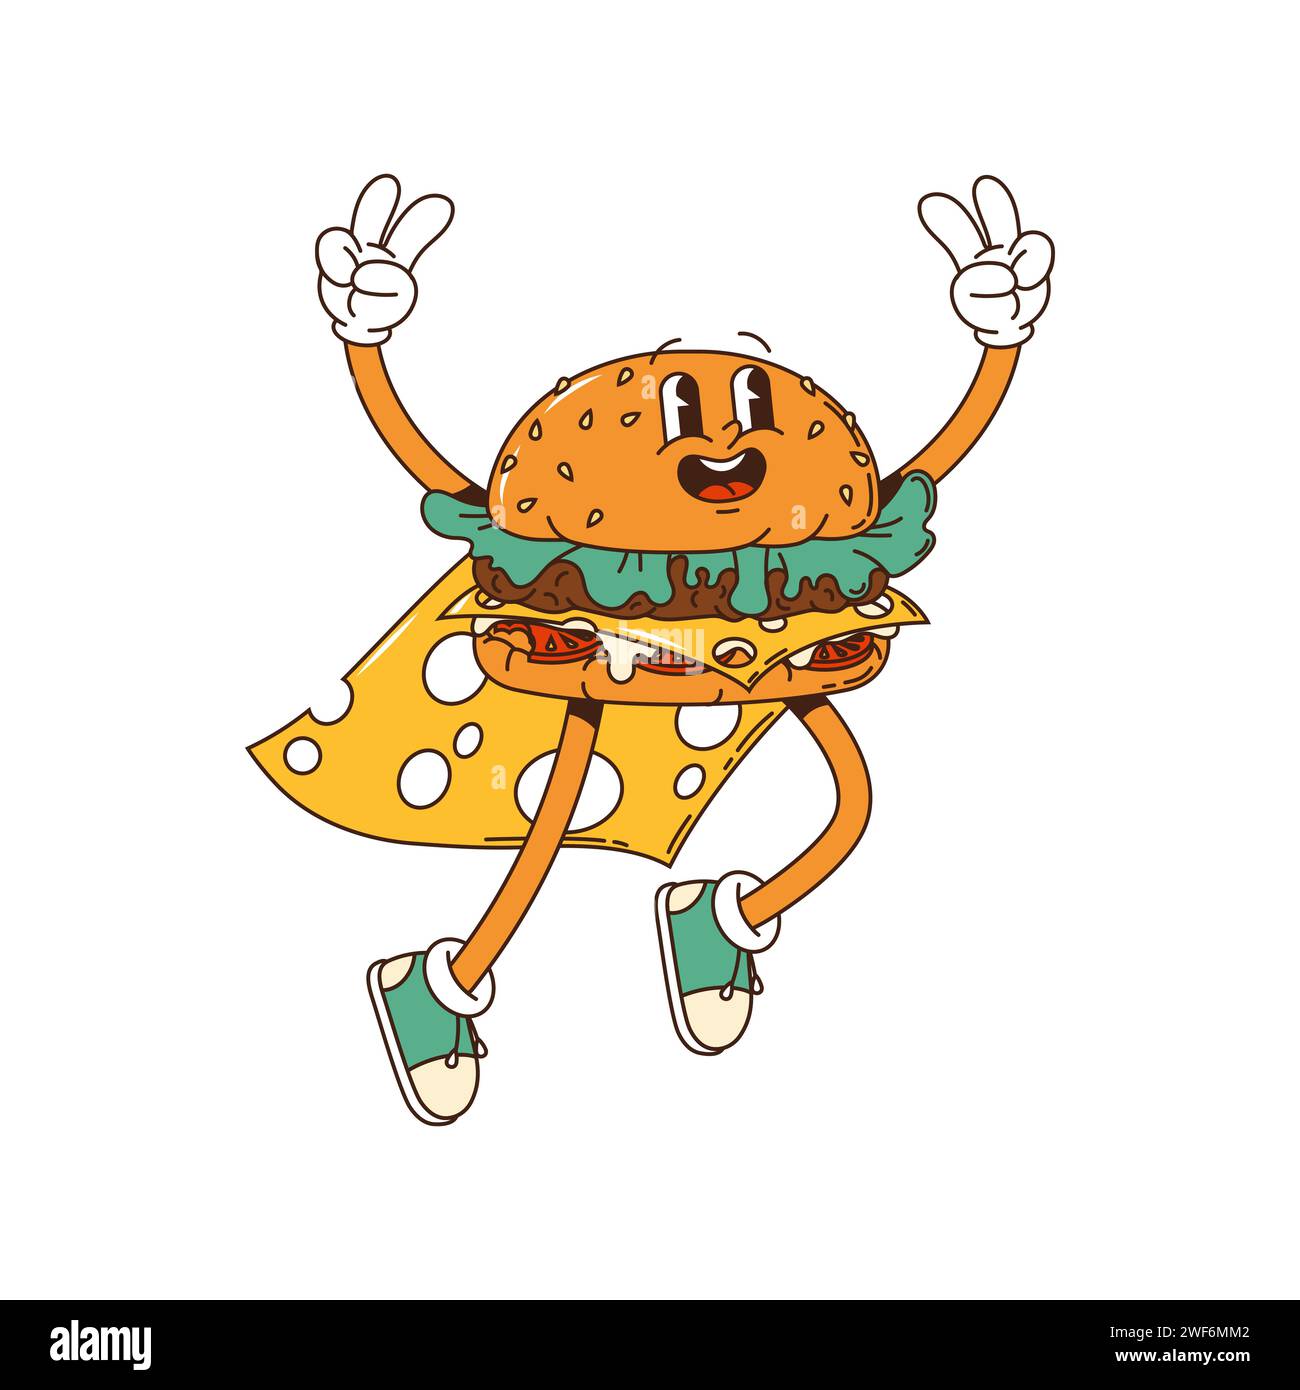 Personnage de dessin animé Groovy Burger, cheeseburger hippie avec visage heureux, fast-food vecteur. Super-héros groovy Burger dans le manteau de fromage, dessin animé funky cheeseburger sautant avec le geste des doigts de paix Illustration de Vecteur